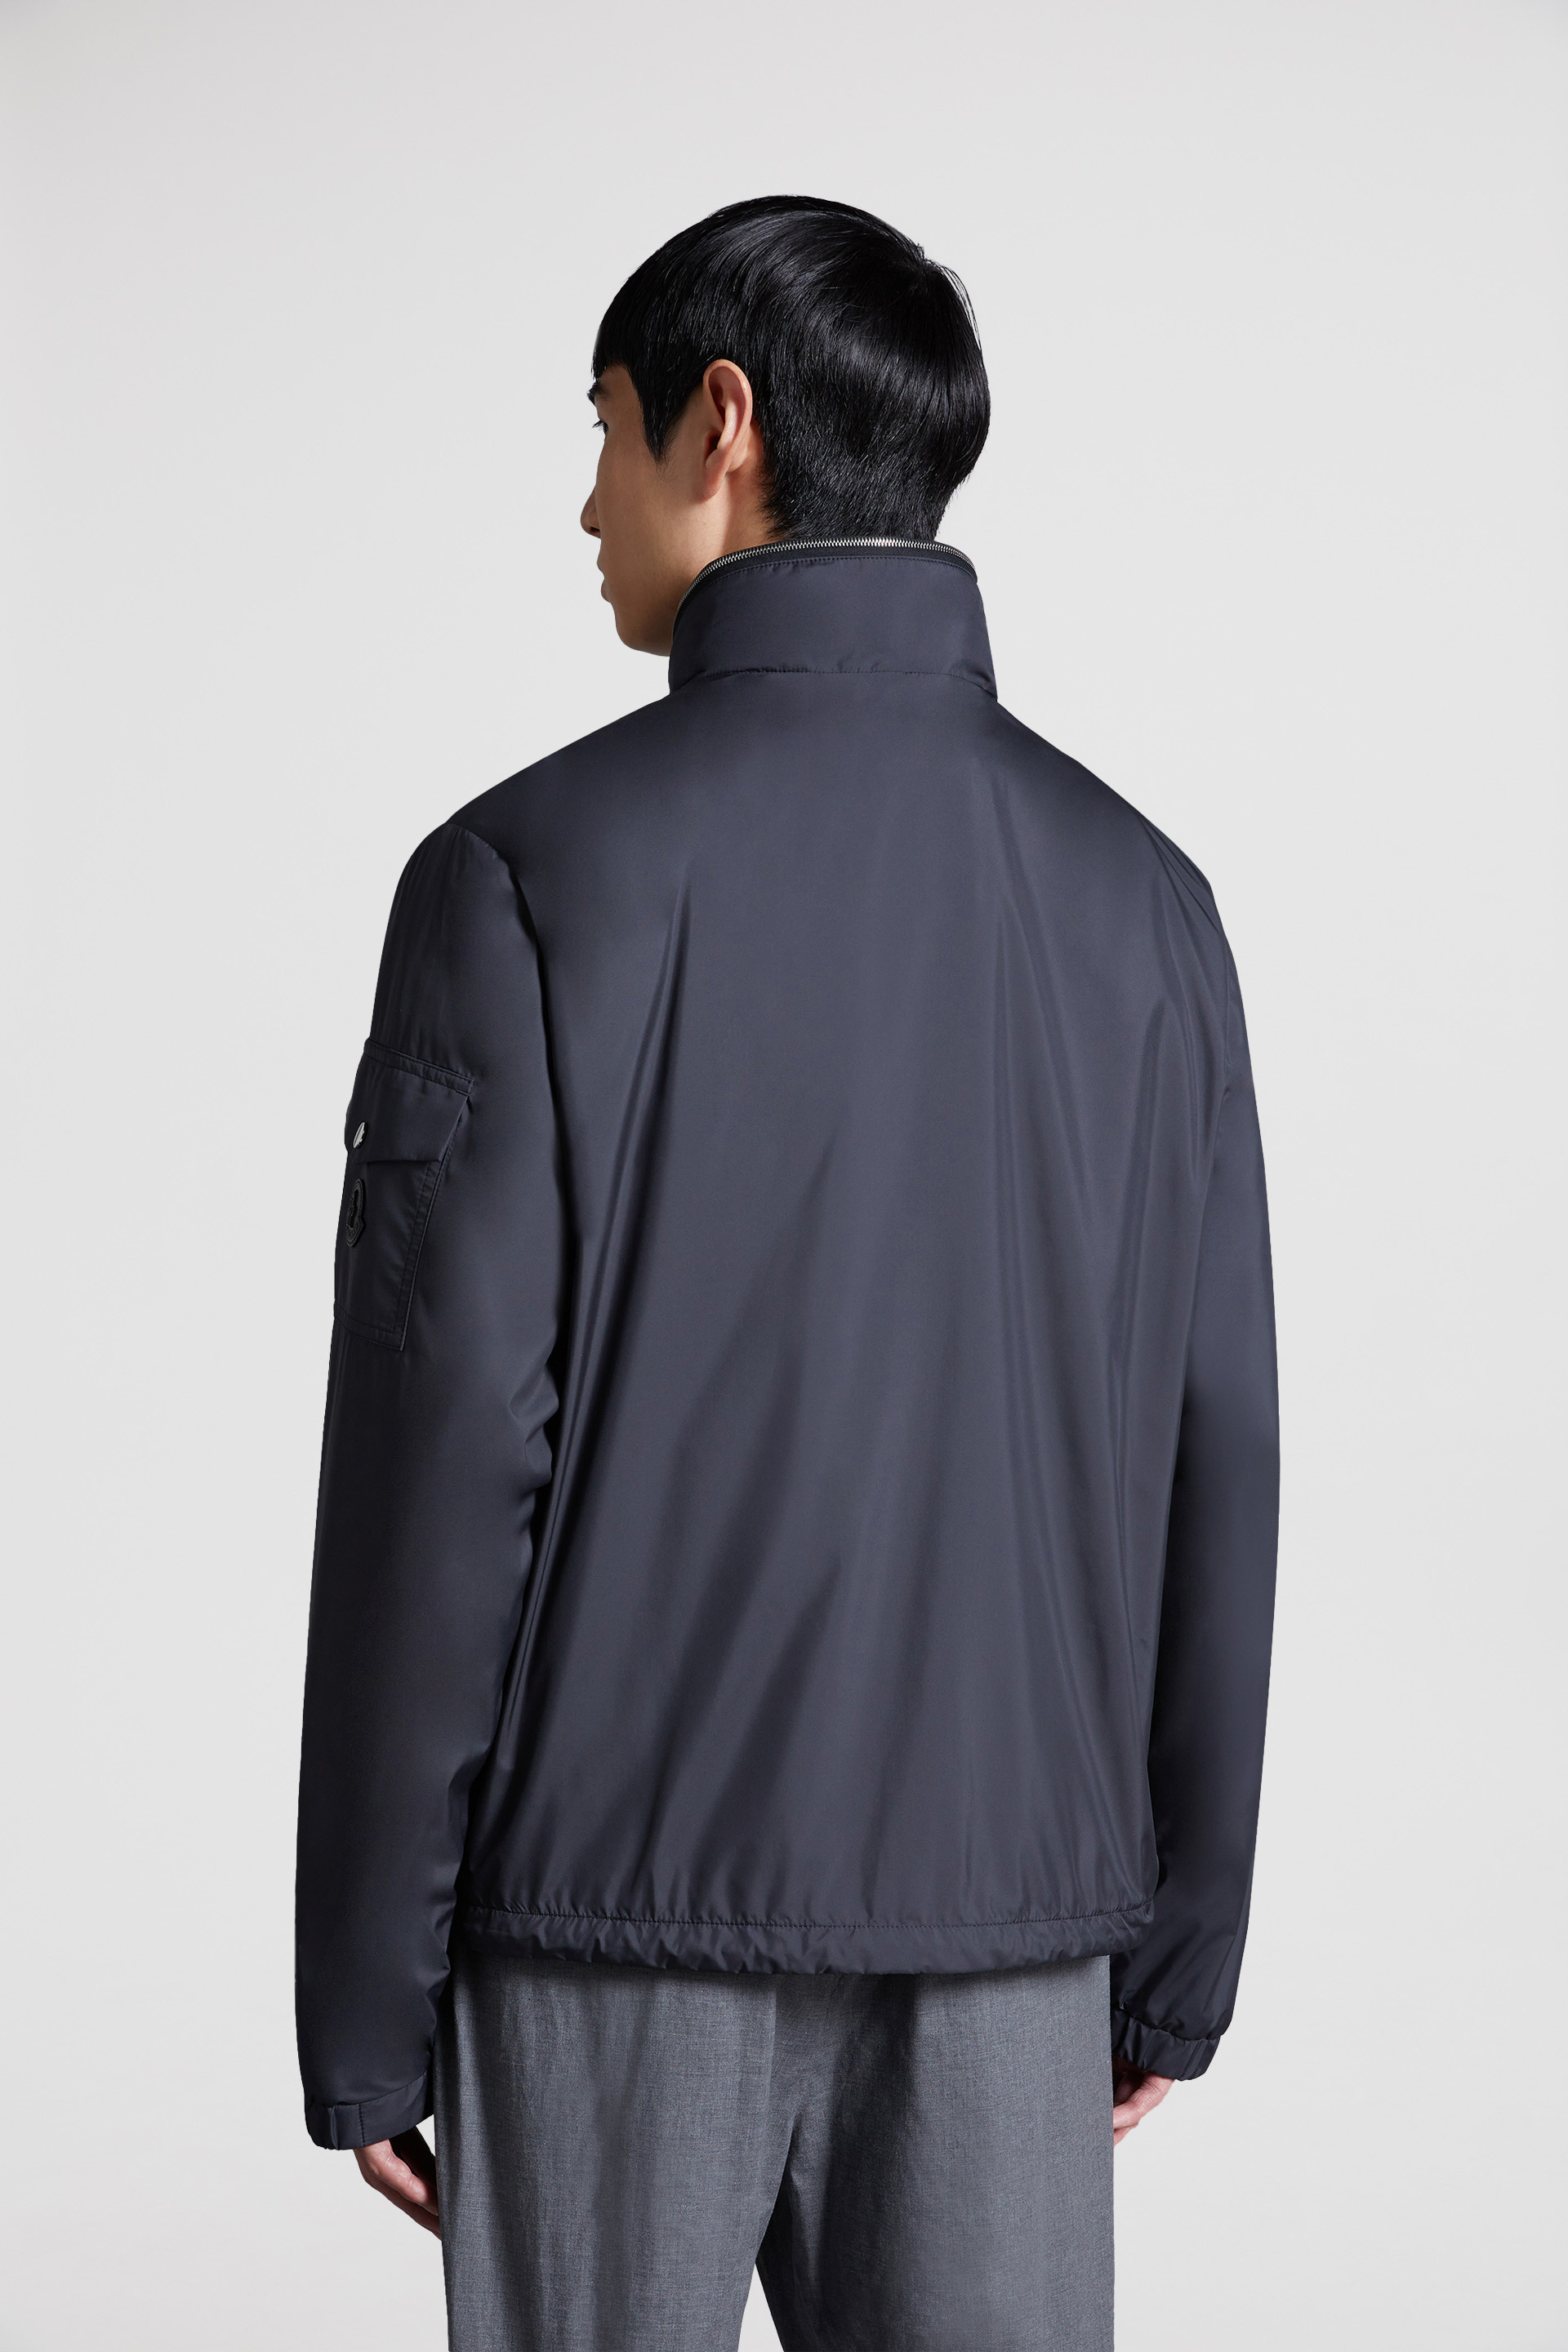 黑色Ischiator男士拉出式兜帽夹克外套- 薄款外套&风衣for 男装| Moncler HK